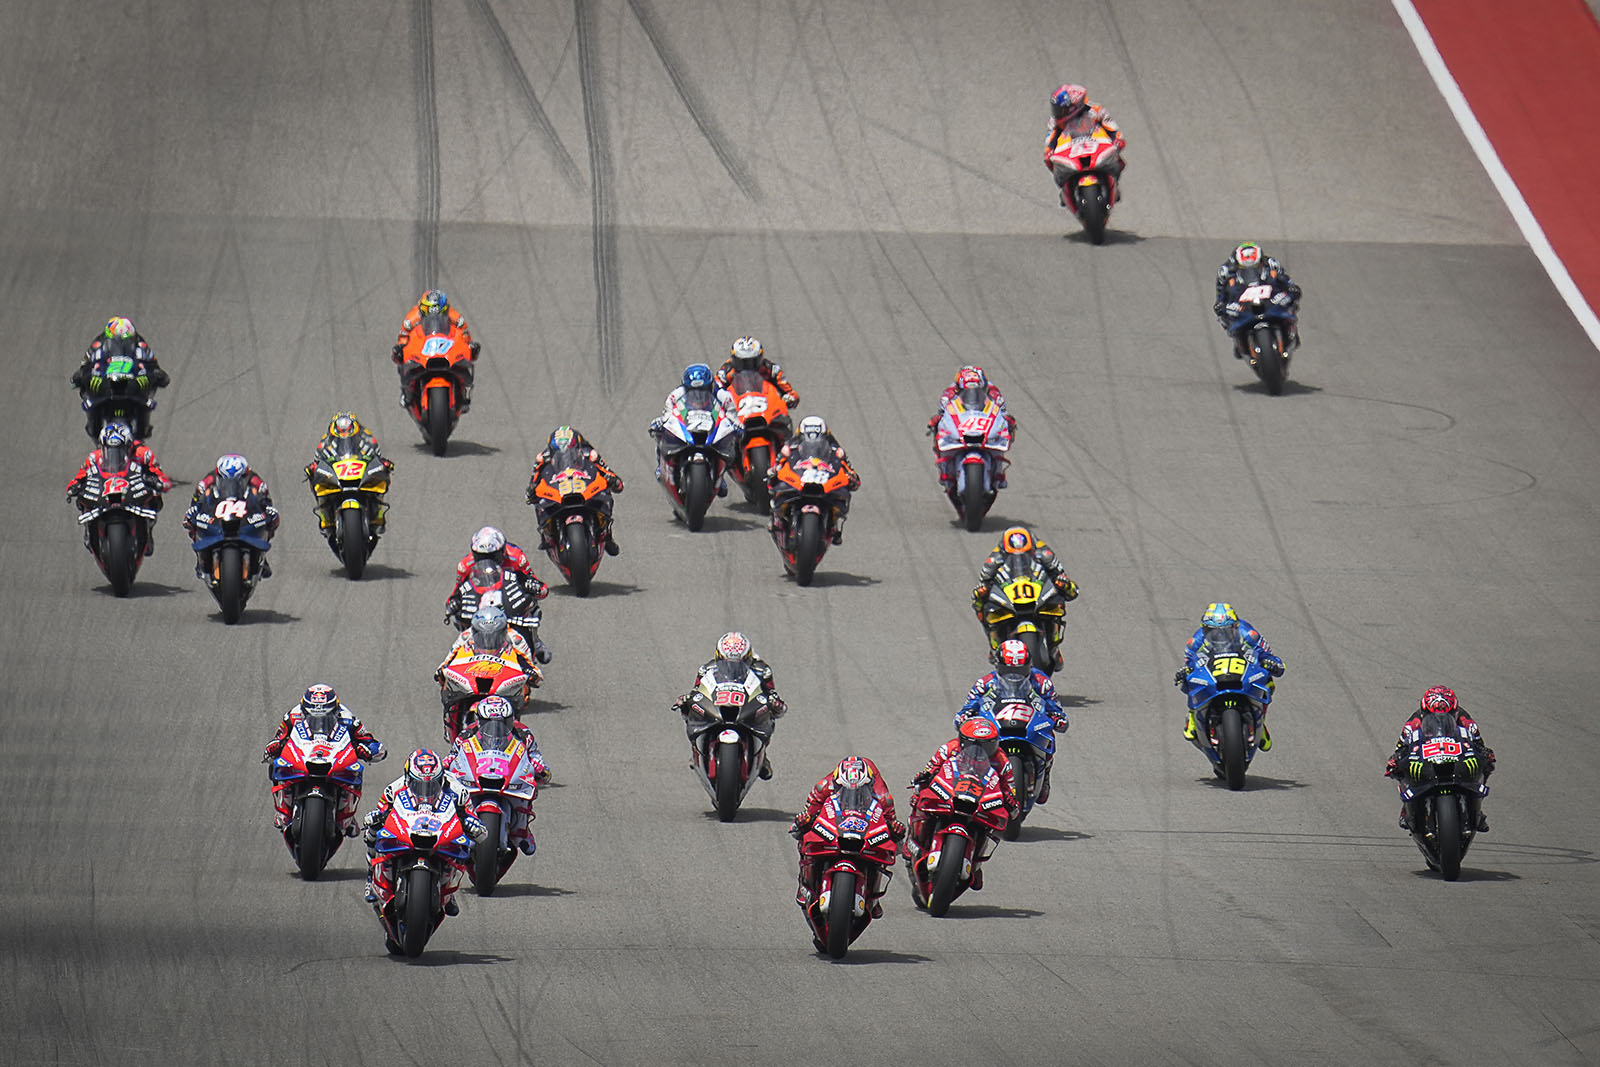 Calendário MotoGP 2022 terá 21 corridas - nenhuma no Brasil - Motonline